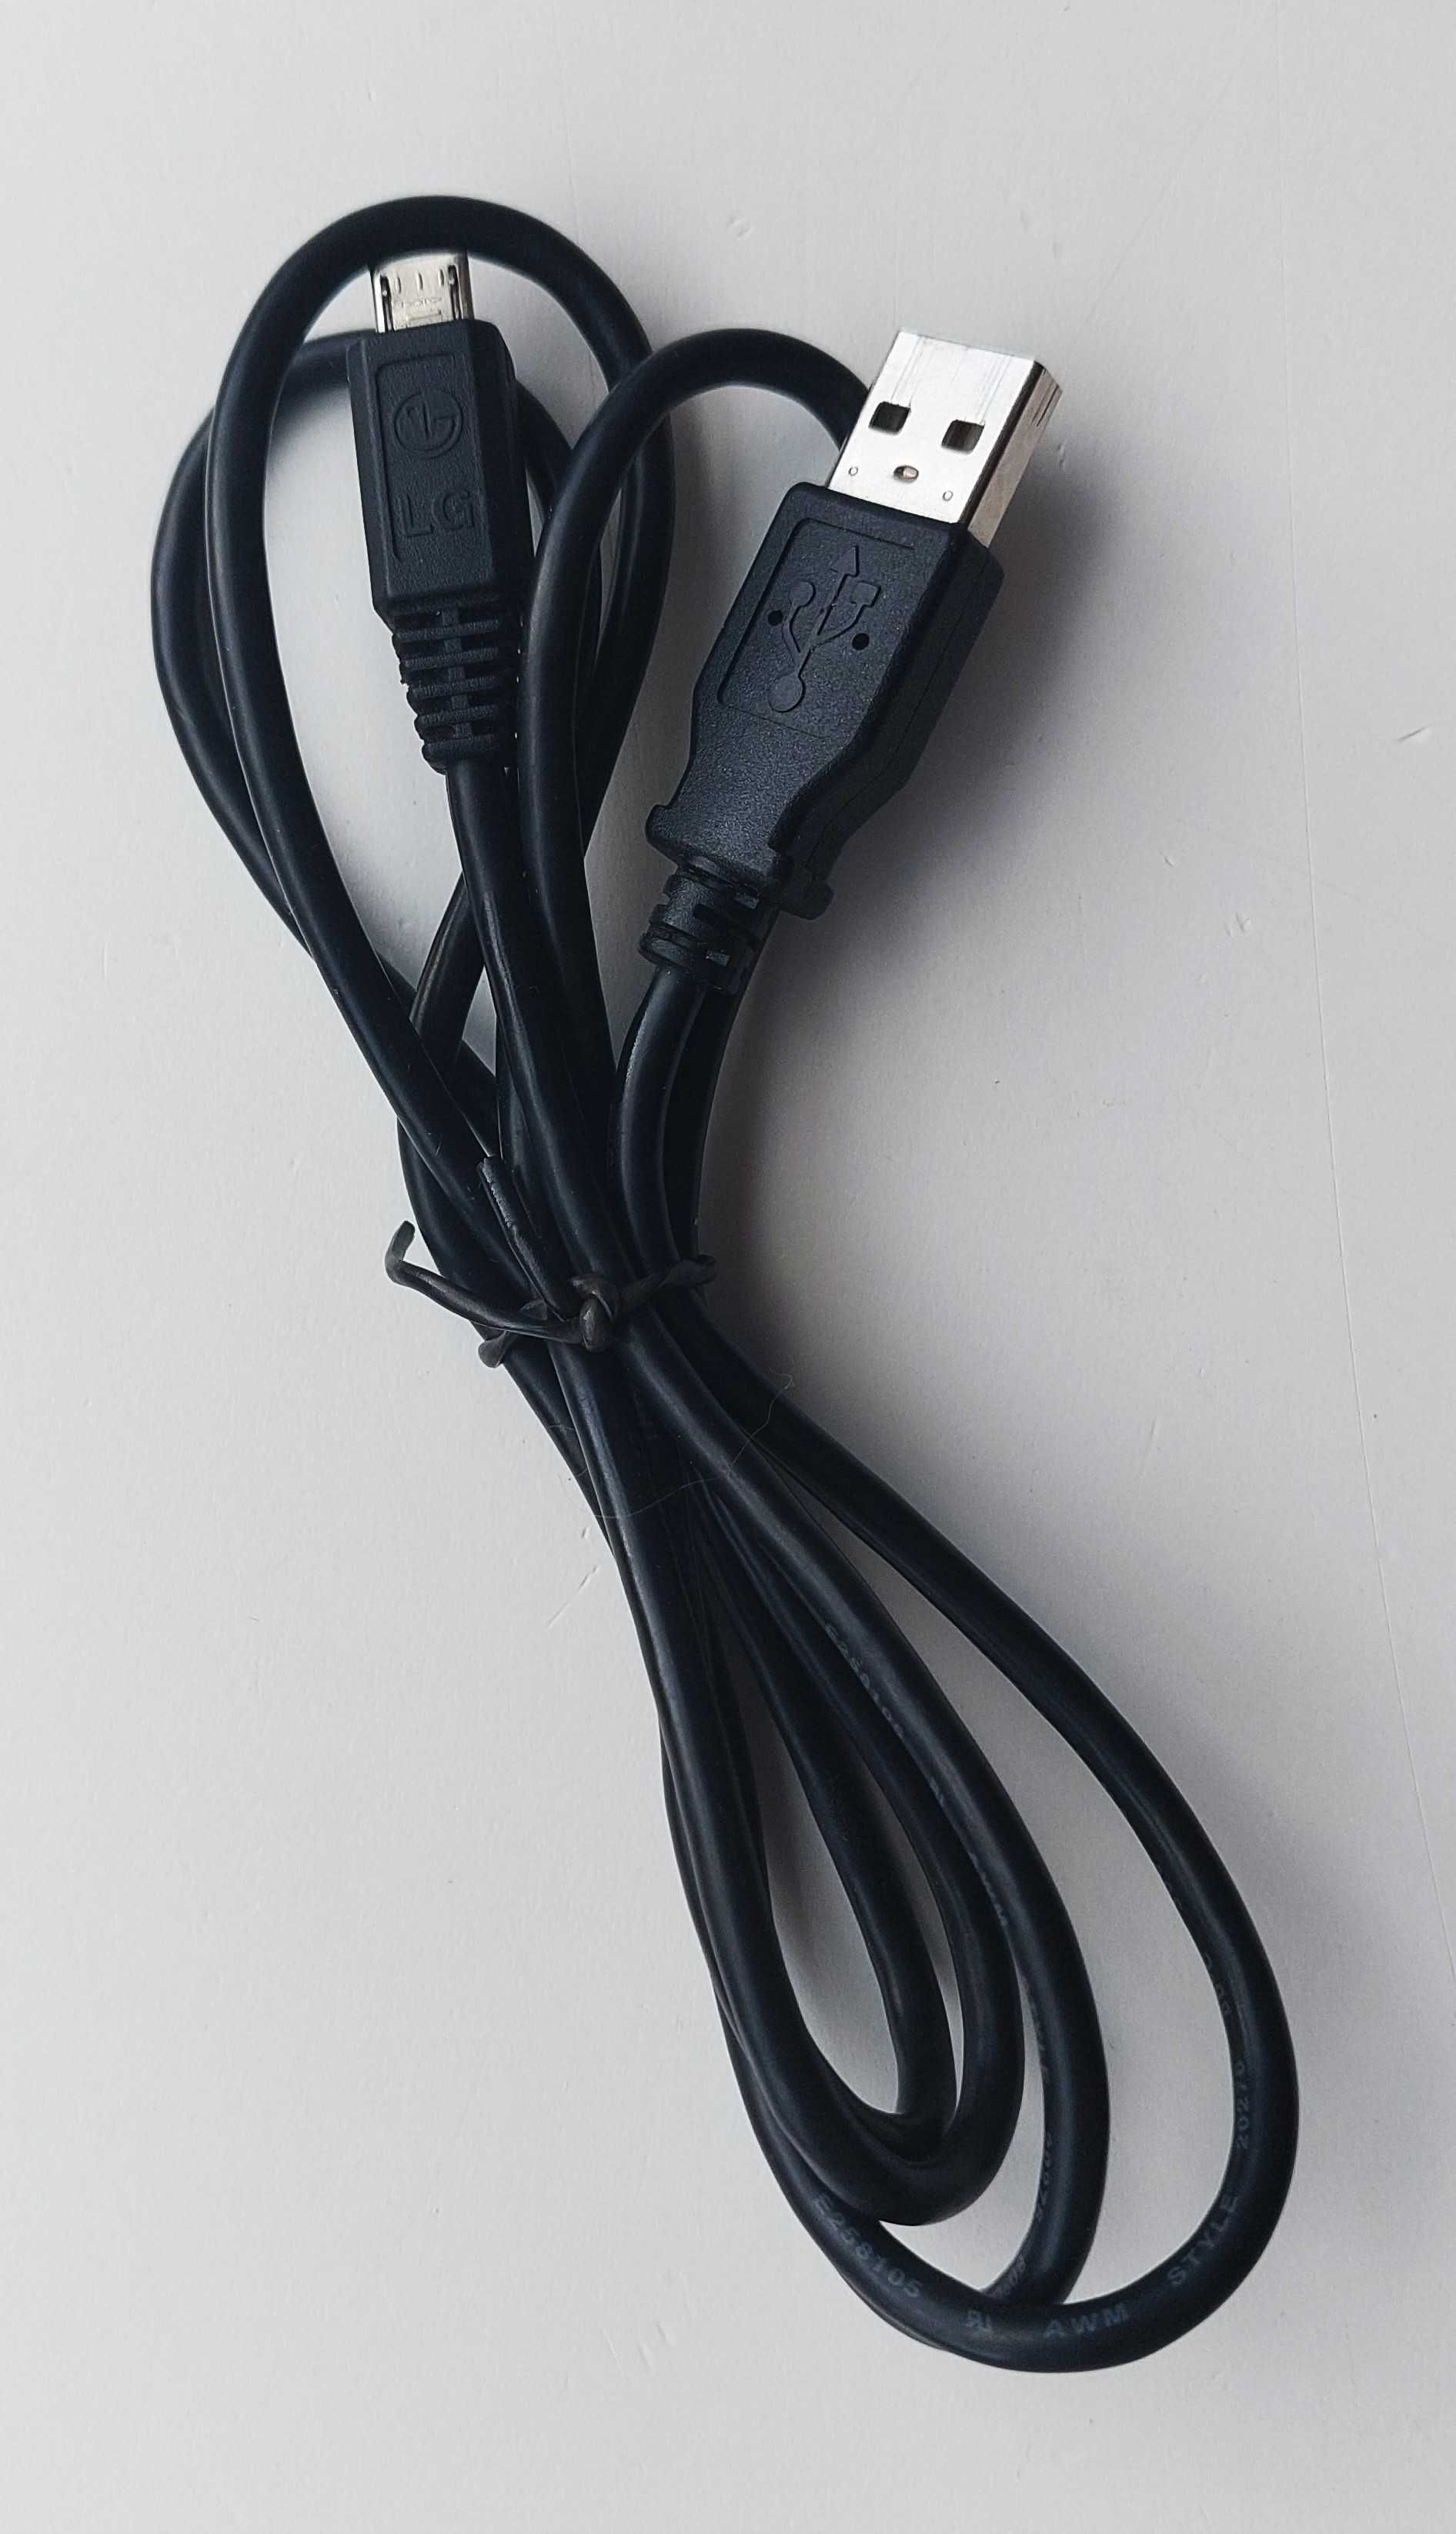 Cabo de conexão / conversor USB 2.0 para micro-USB da LG